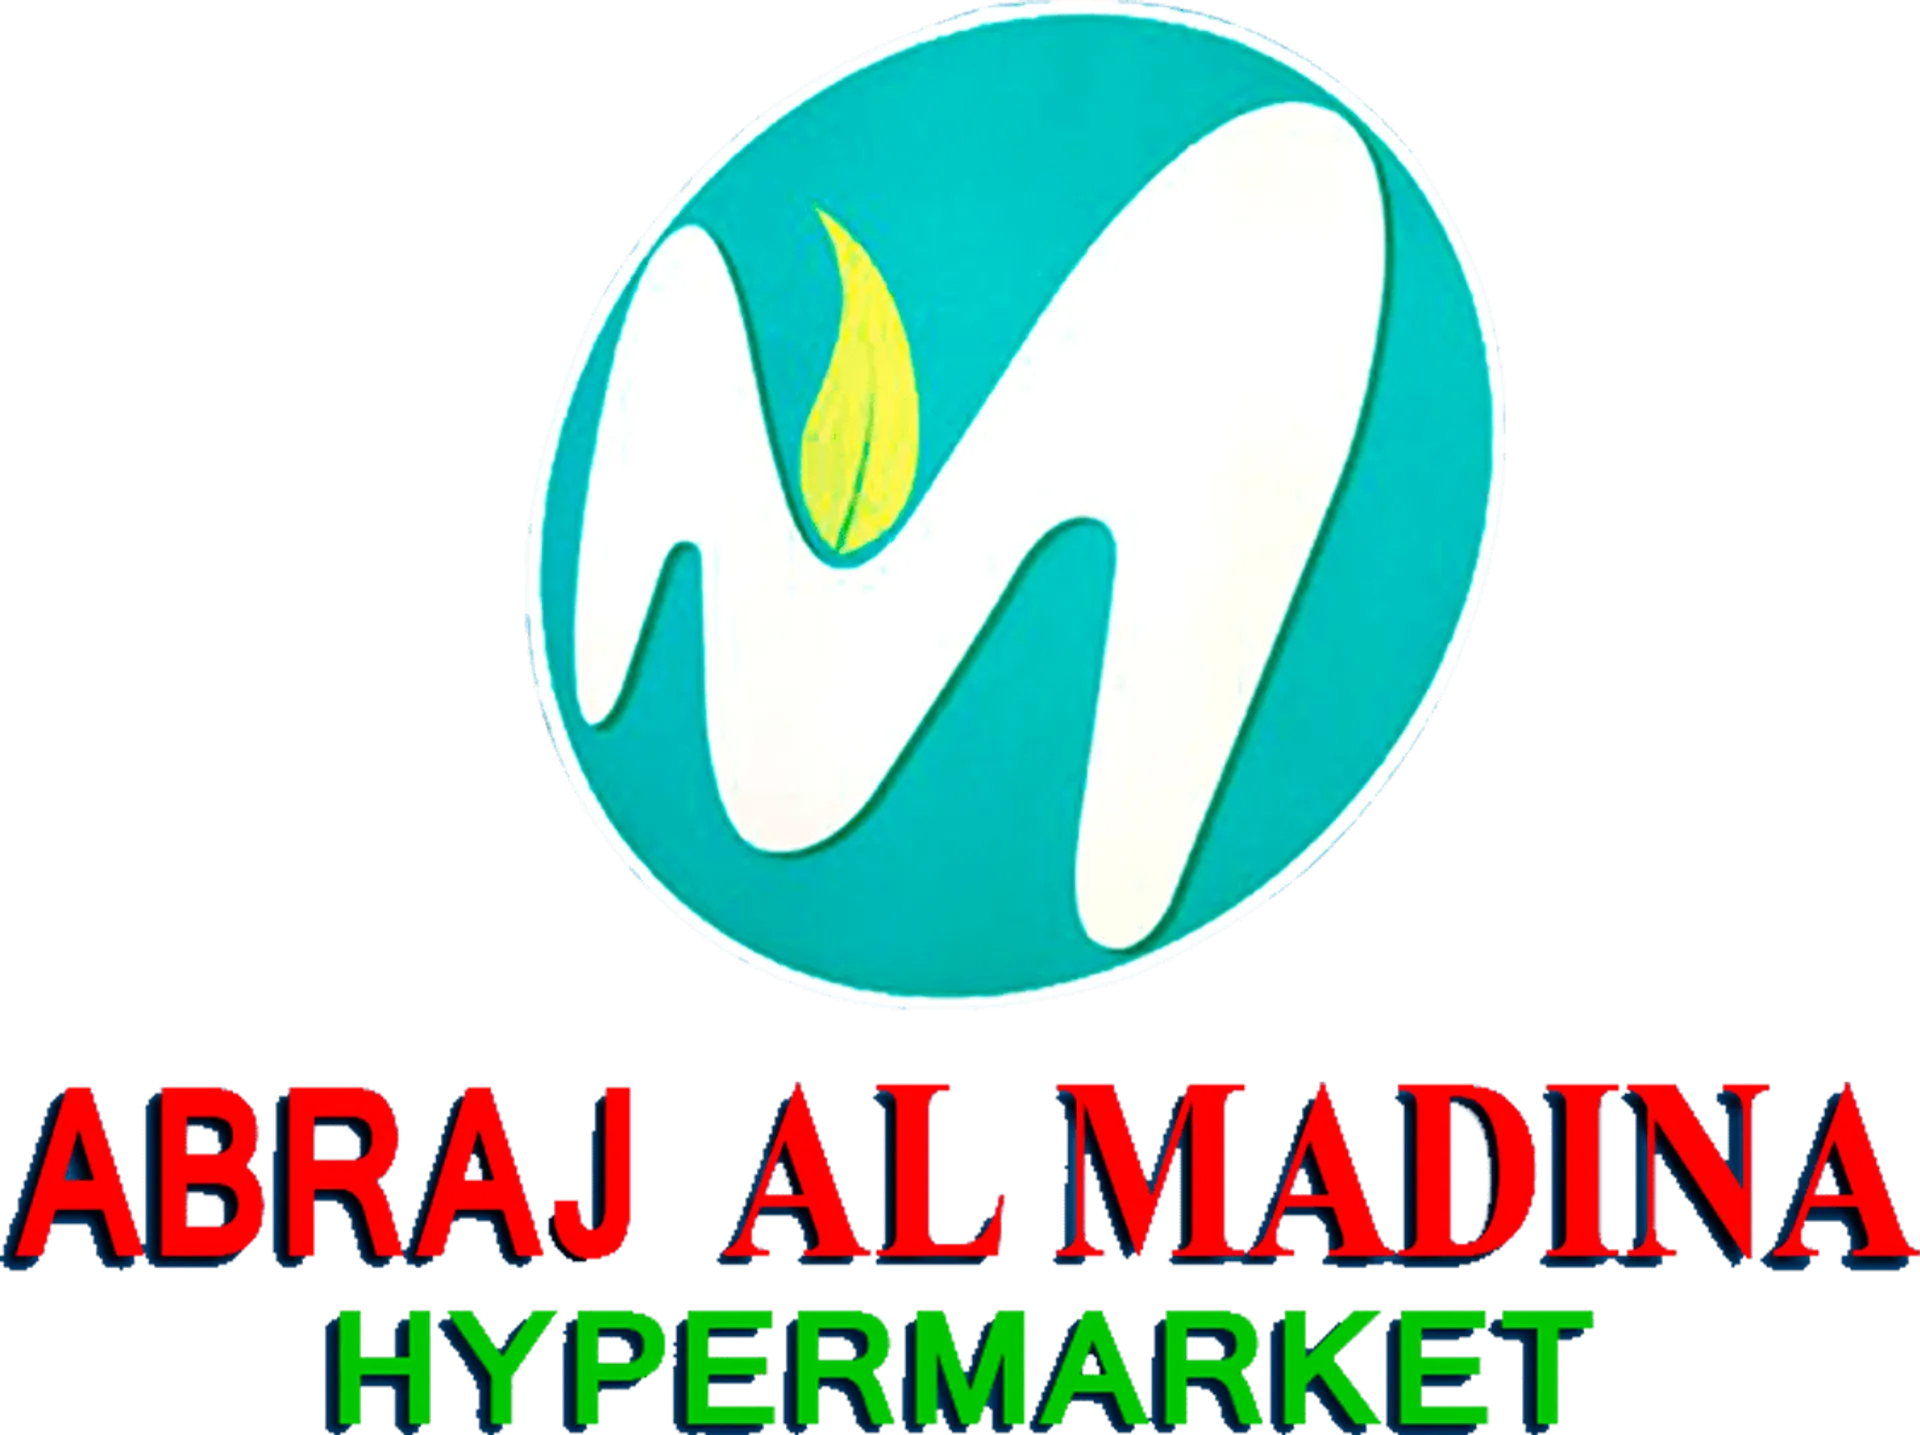 AL MADINA logo. Current weekly ad